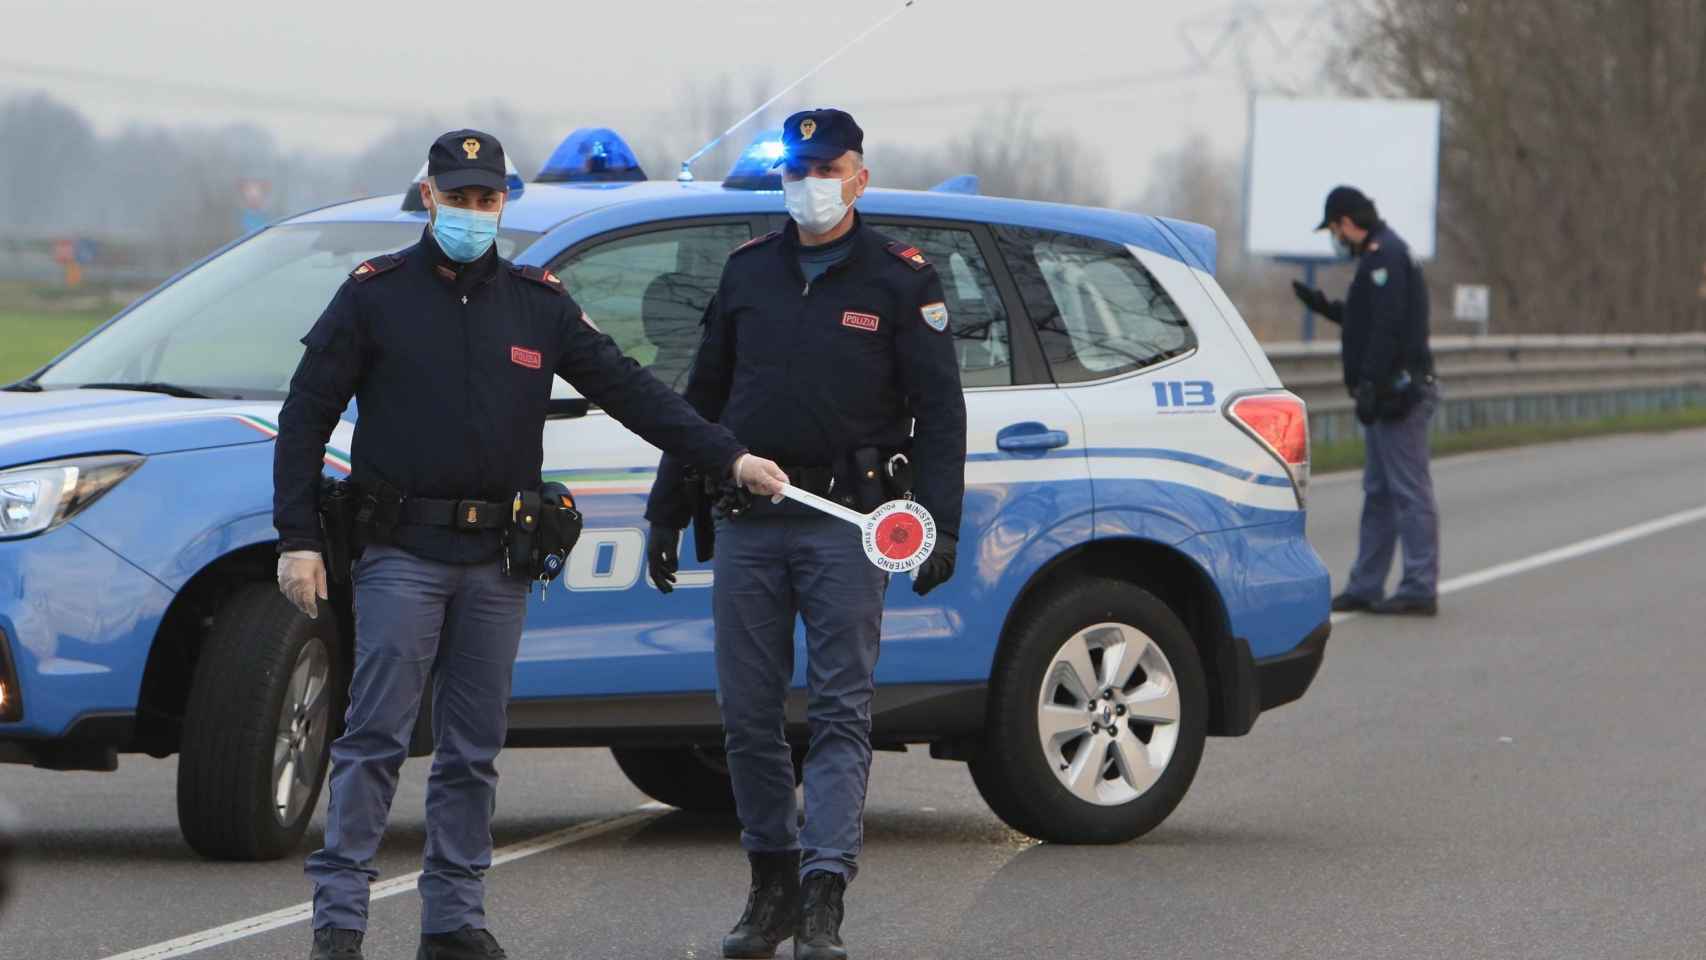 La Policía informa de la situación a los residentes que entran en la pequeña localidad de Casalpusterlengo, al sureste de Milán.